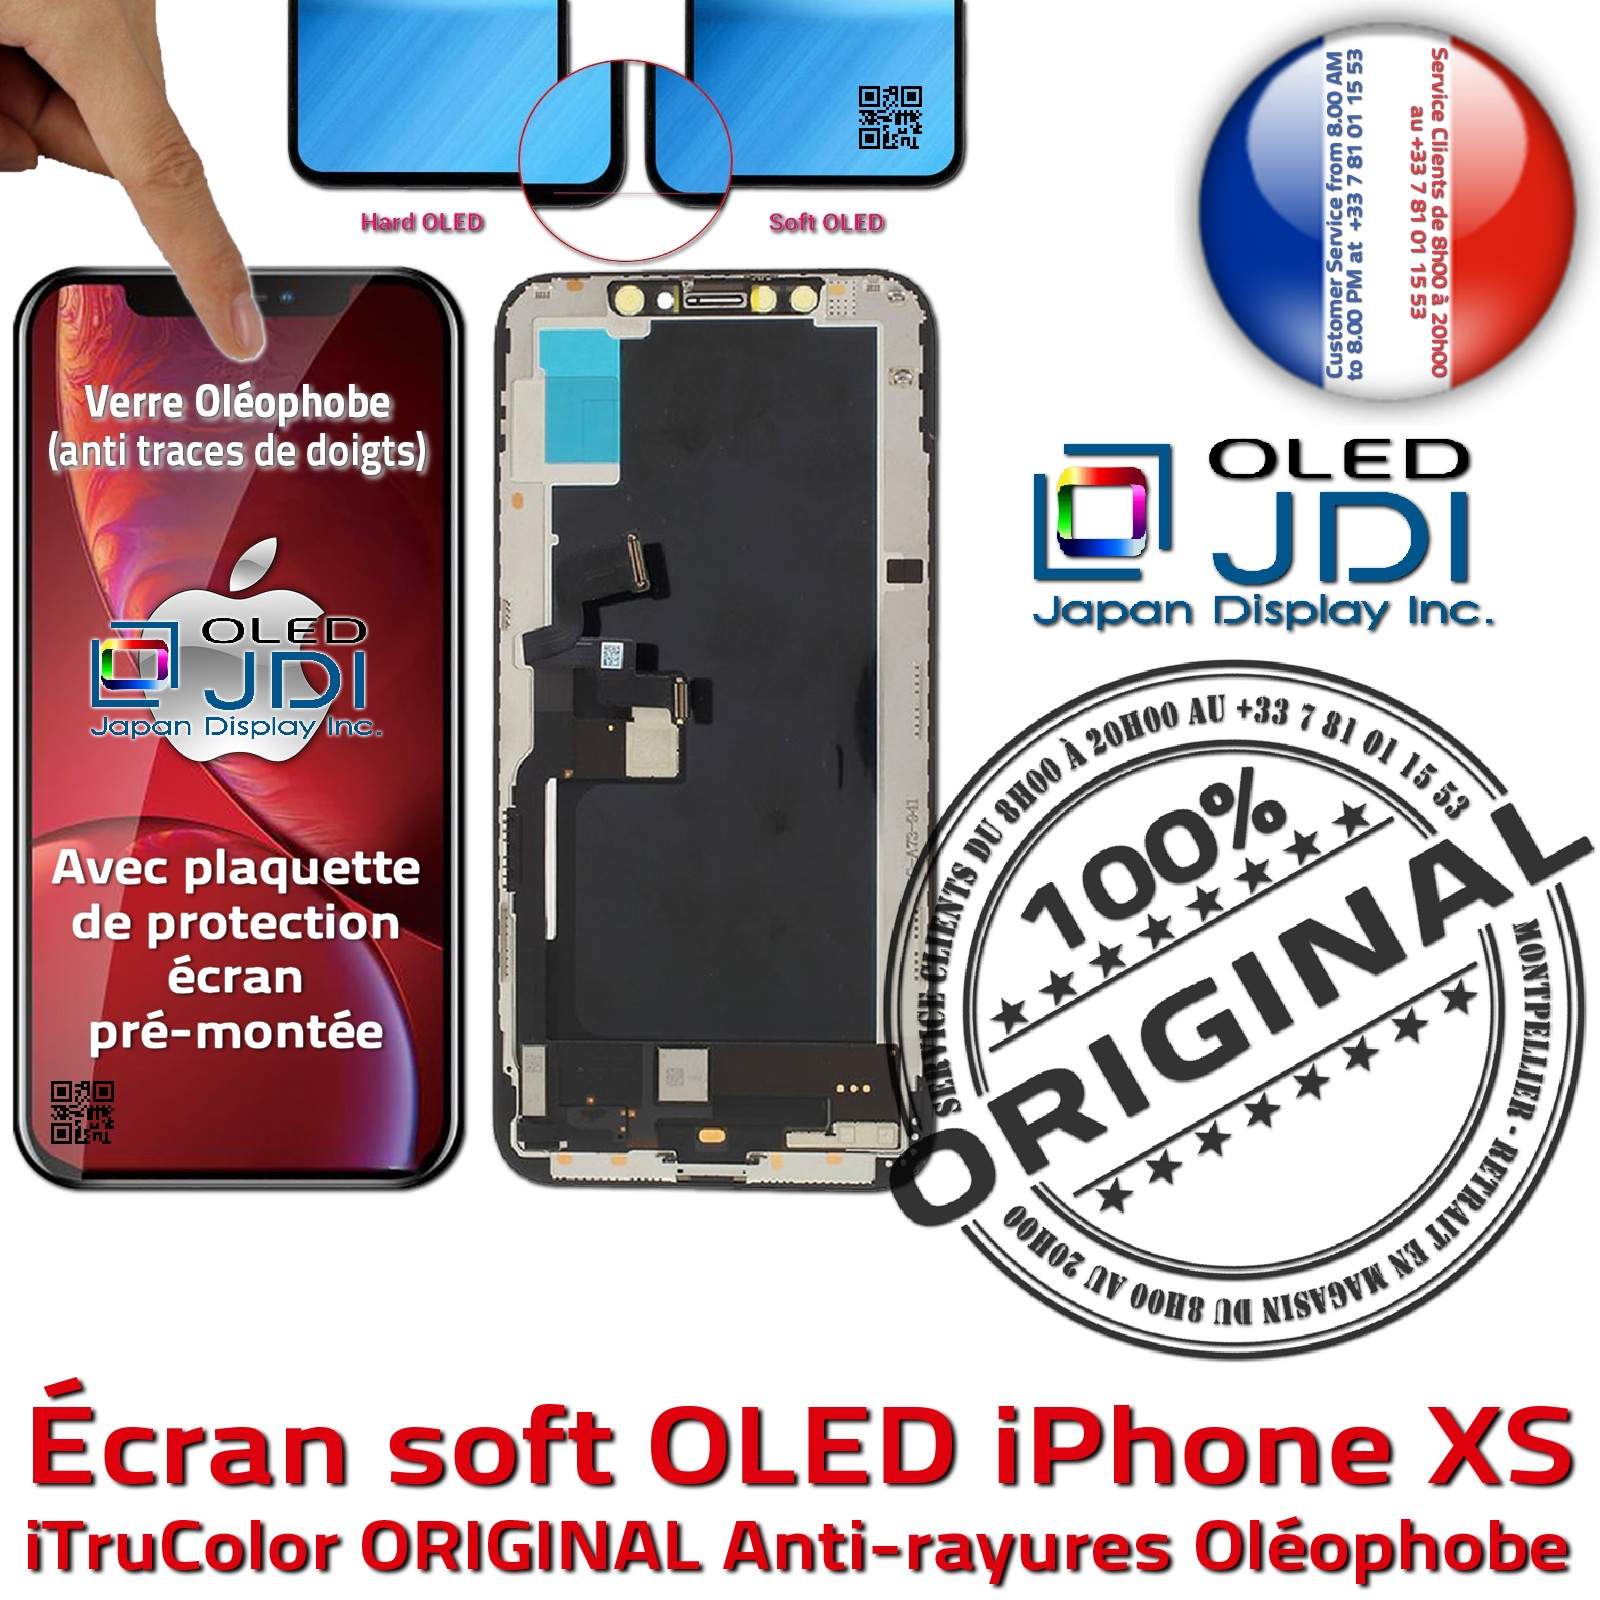 Écran Tactile soft OLED Apple iPhone XS ORIGINAL Super Retina 5,8